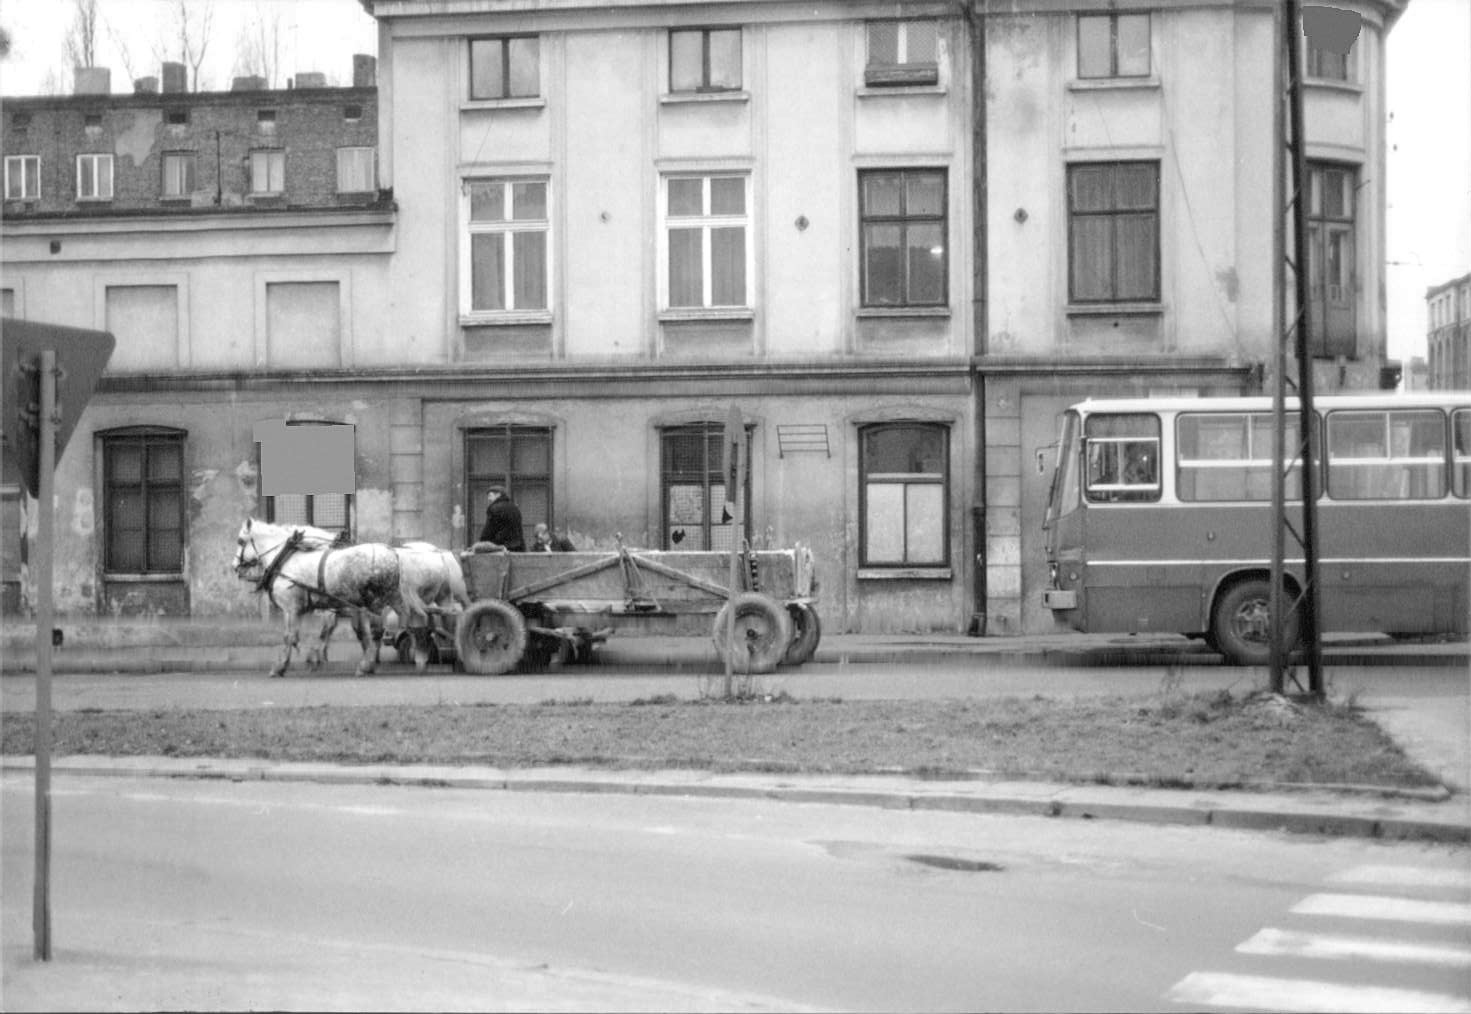 Street scene, Łódź, 1989